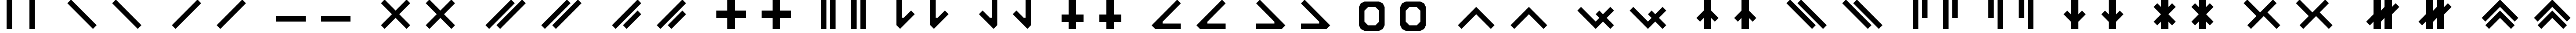 Пример написания английского алфавита шрифтом Catabase Regular